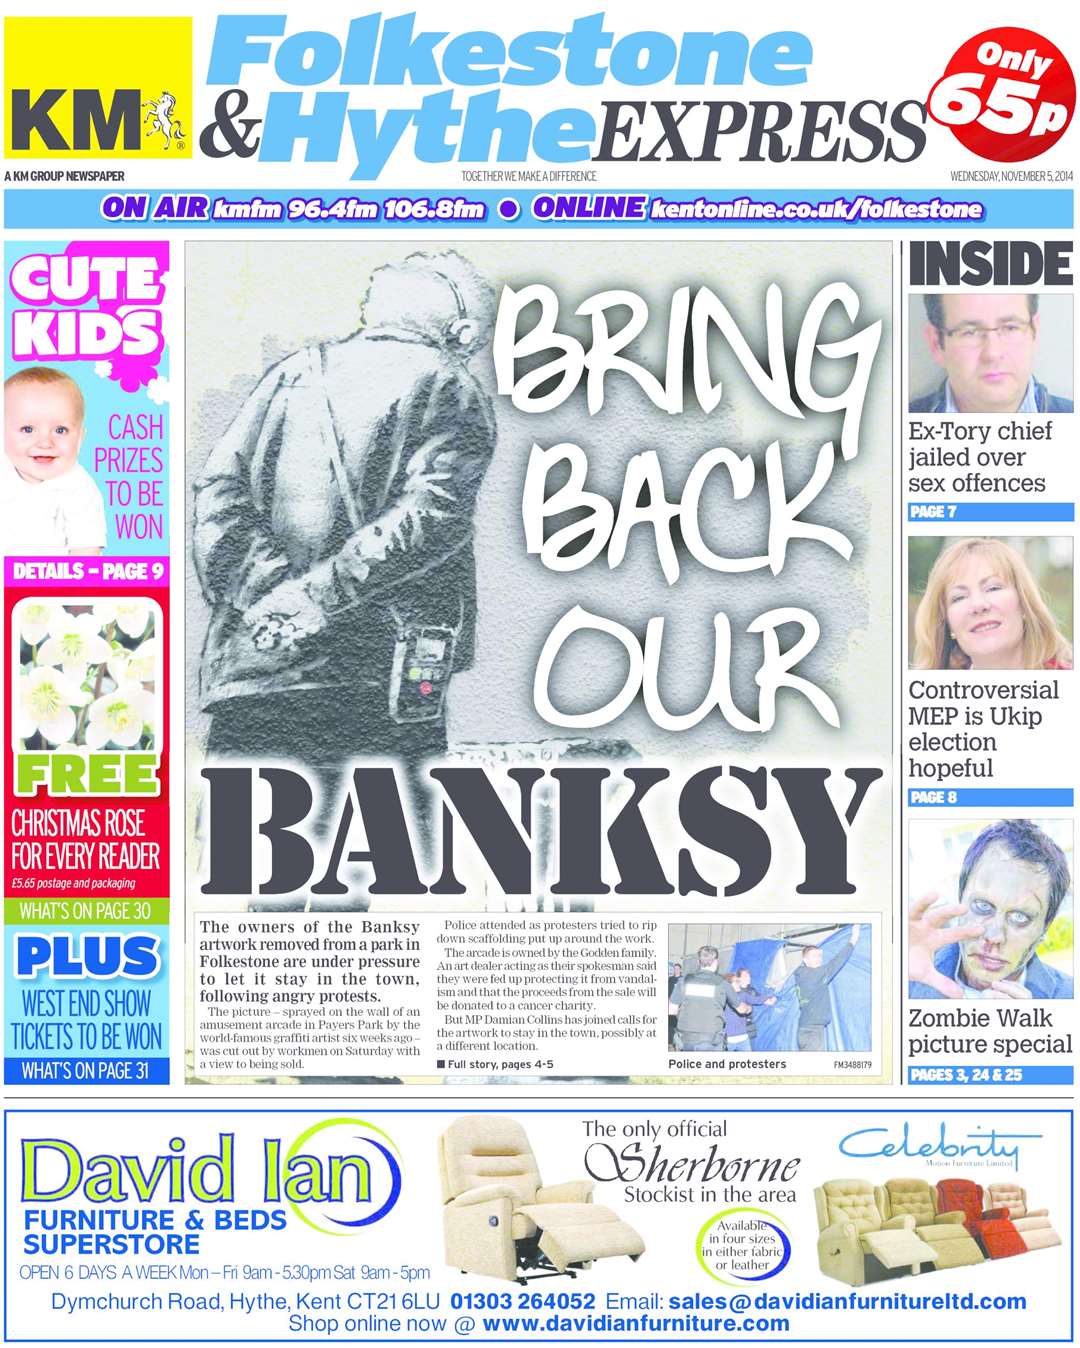 'Bring Back Our Banksy' - November 5 2014